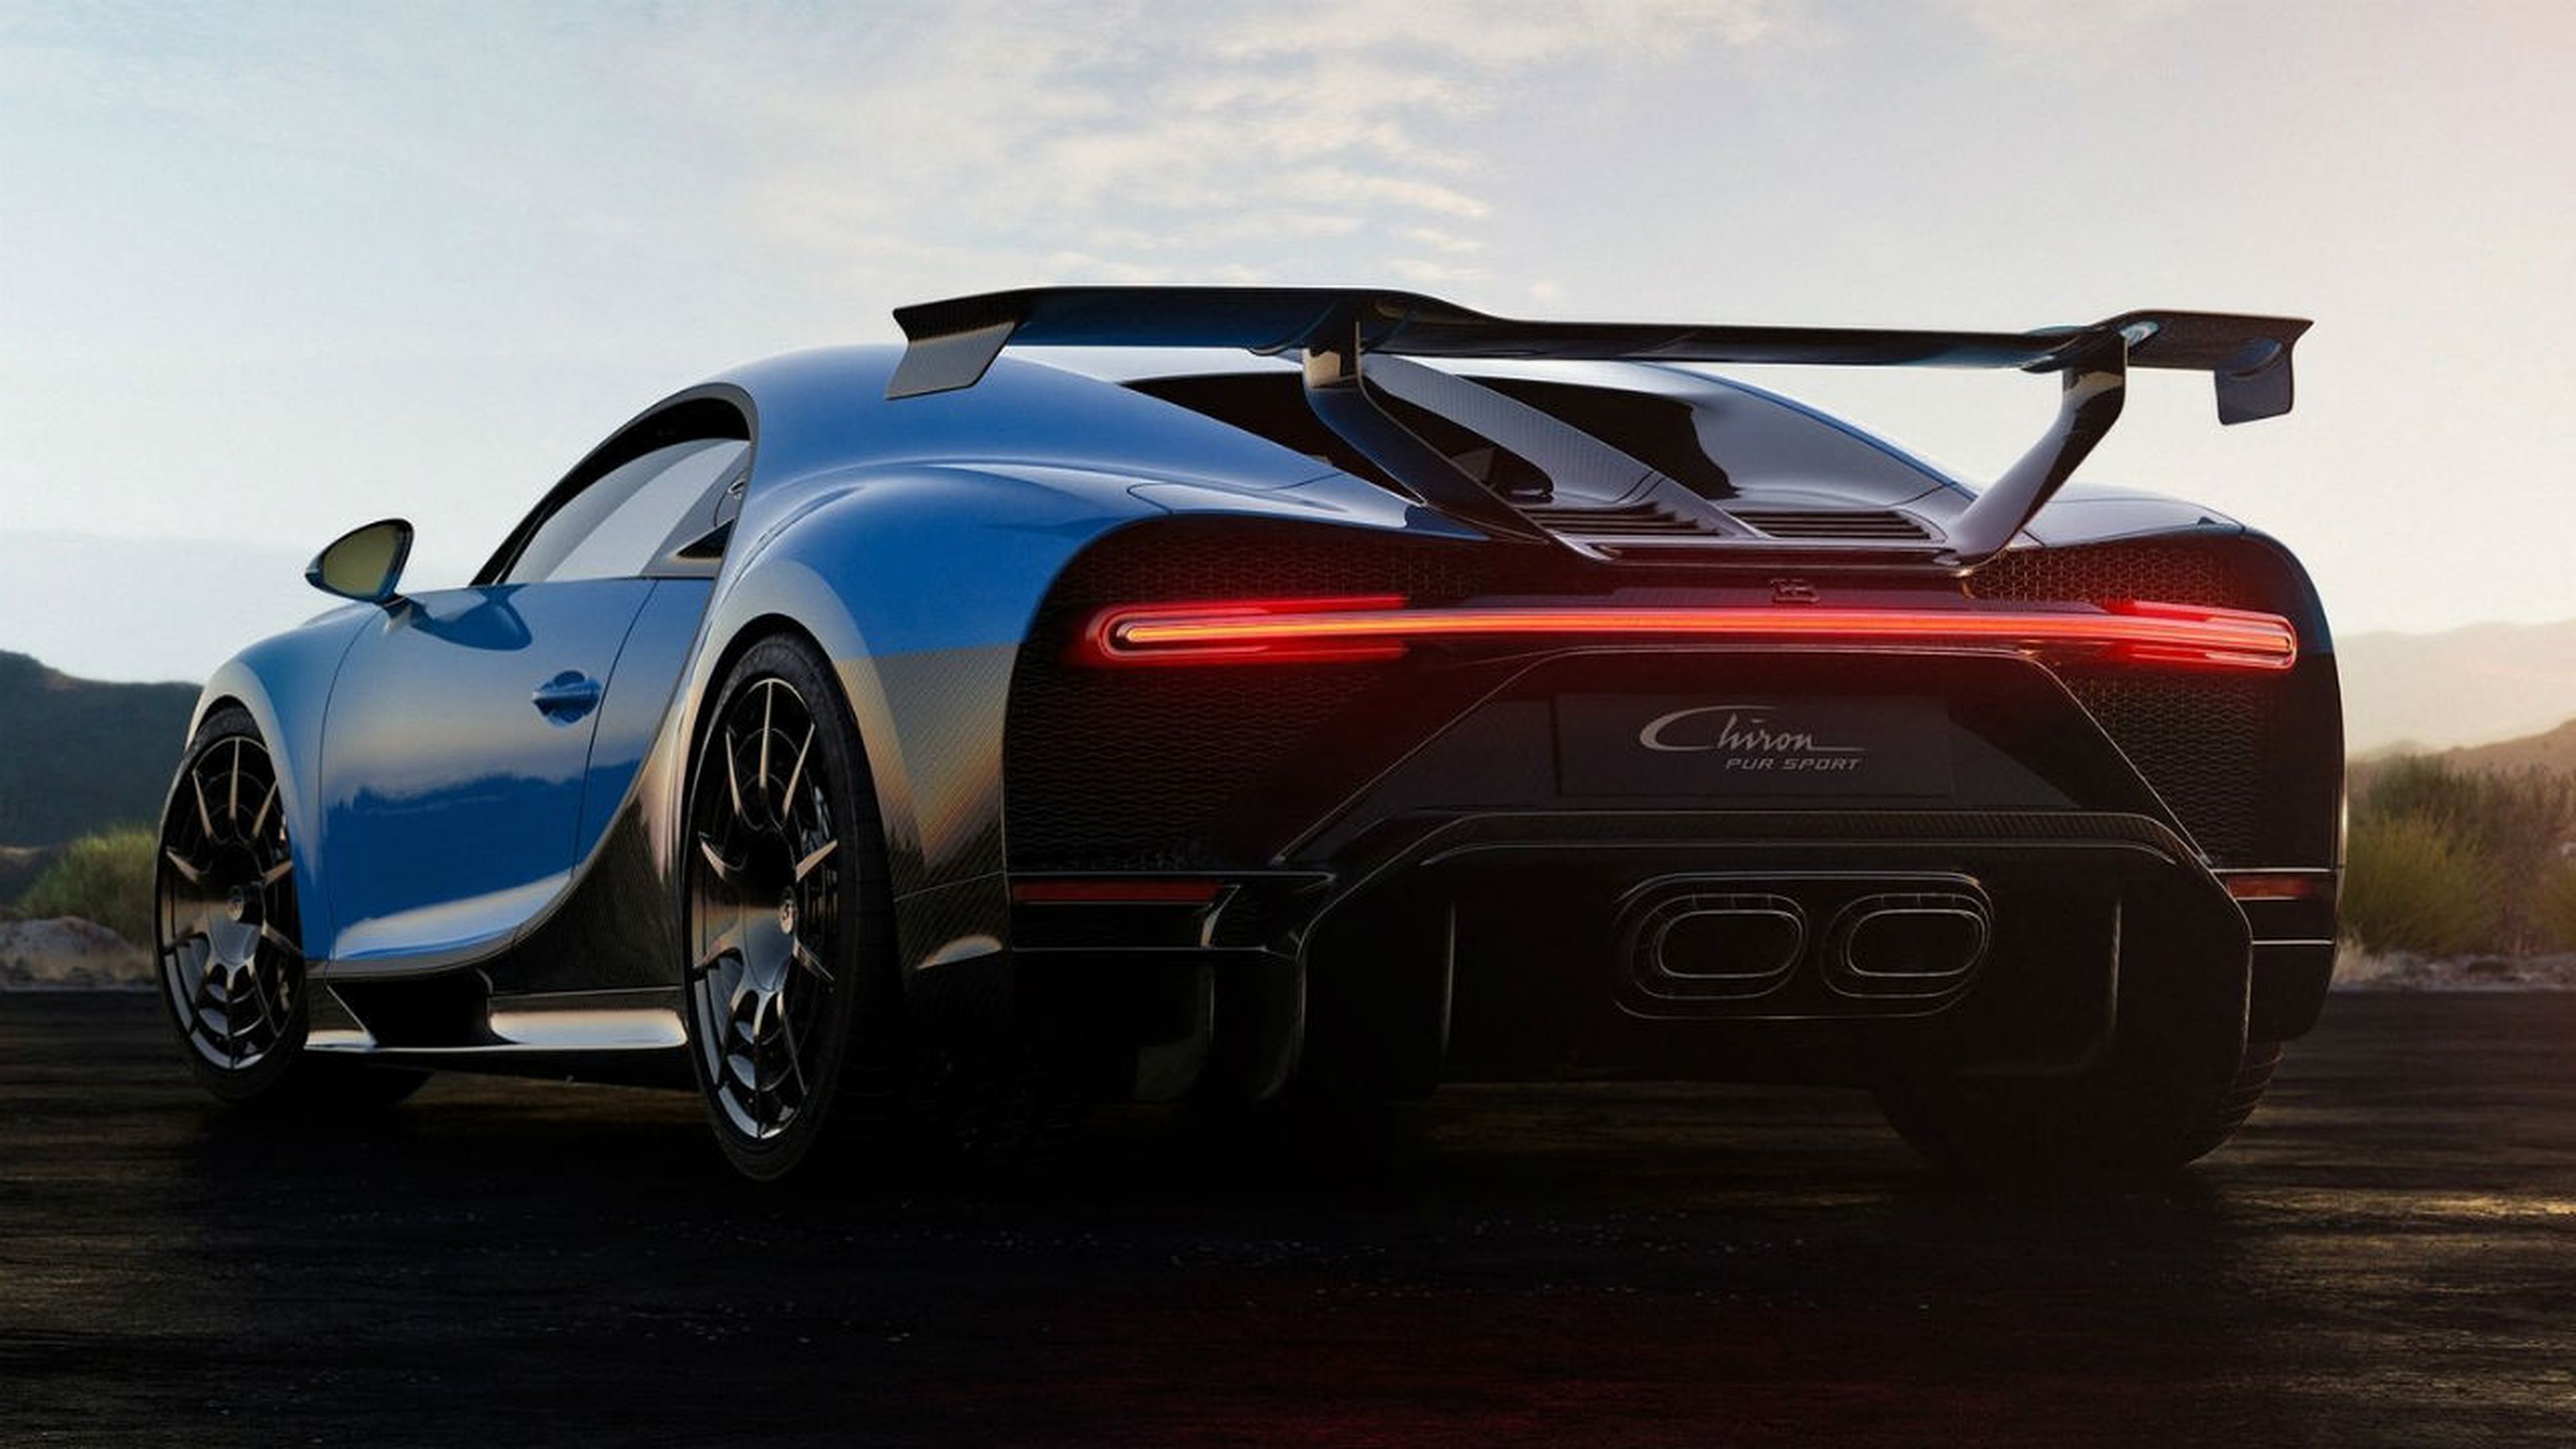 El enorme alerón trasero del Bugatti Chiron Pur Sport es una de sus señas de identidad.